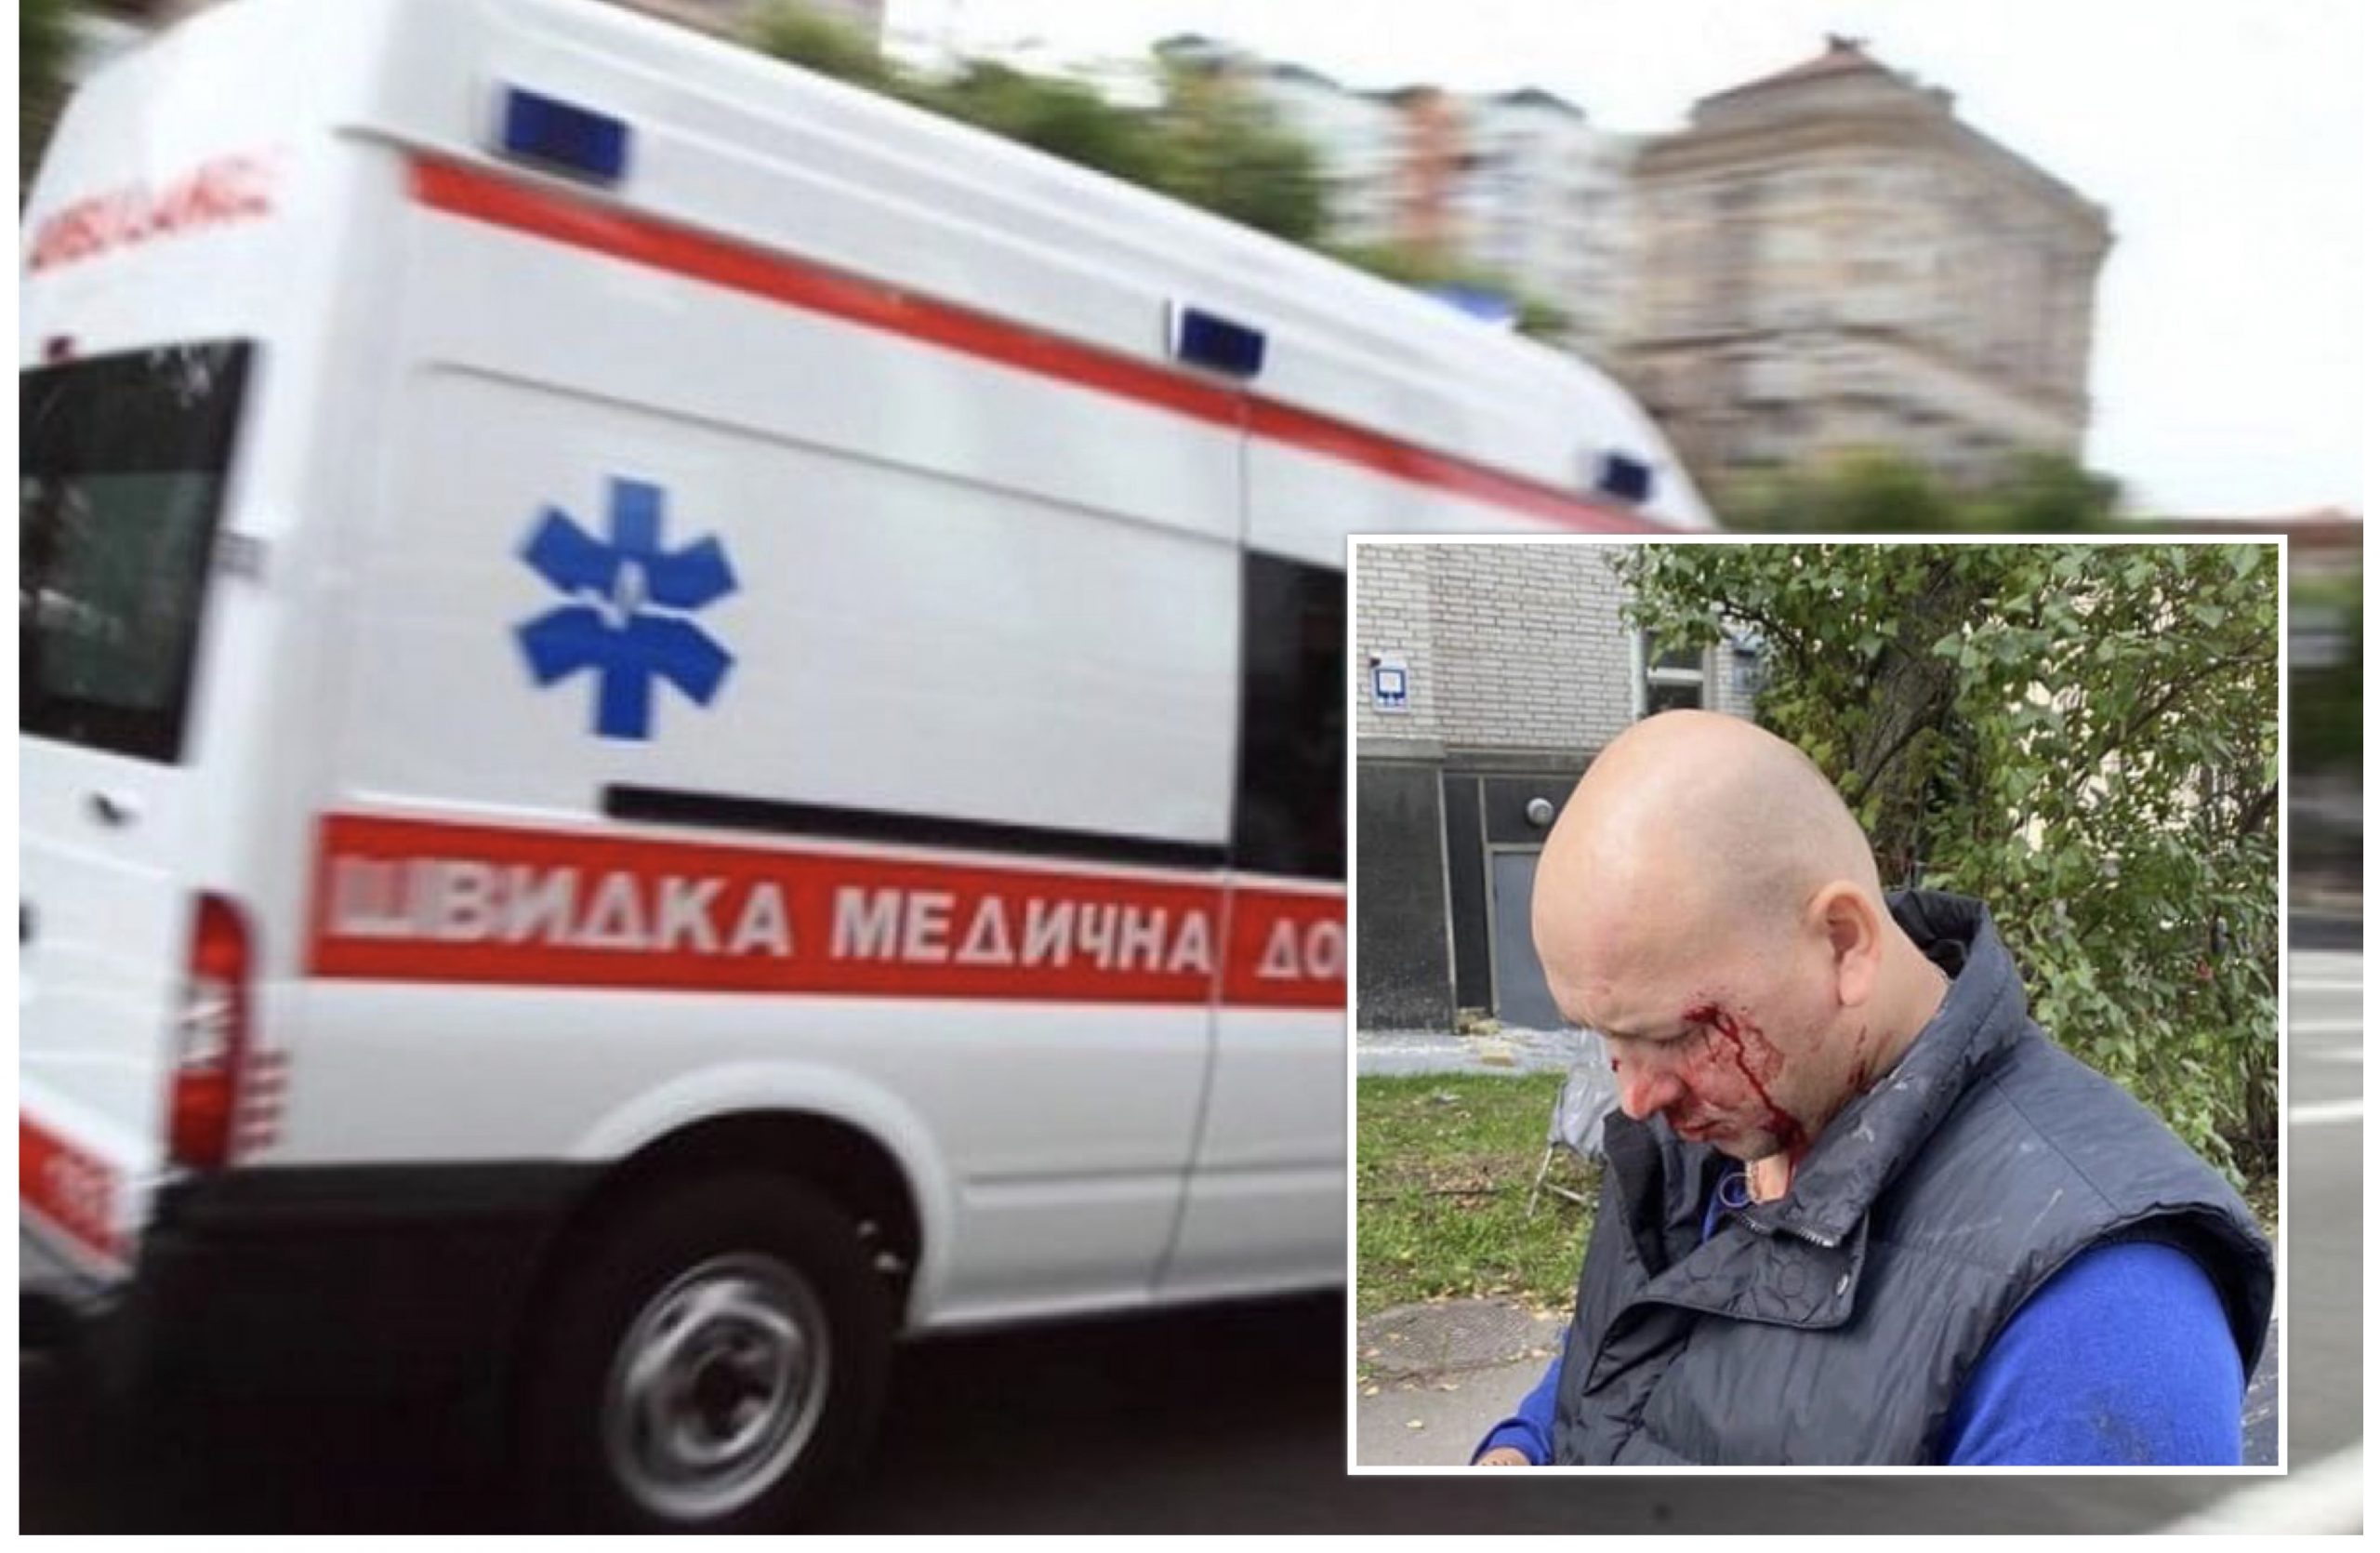 Уроженцы Донецка на BMW избили ветерана АТО: выяснились новые детали нападения (ФОТО)